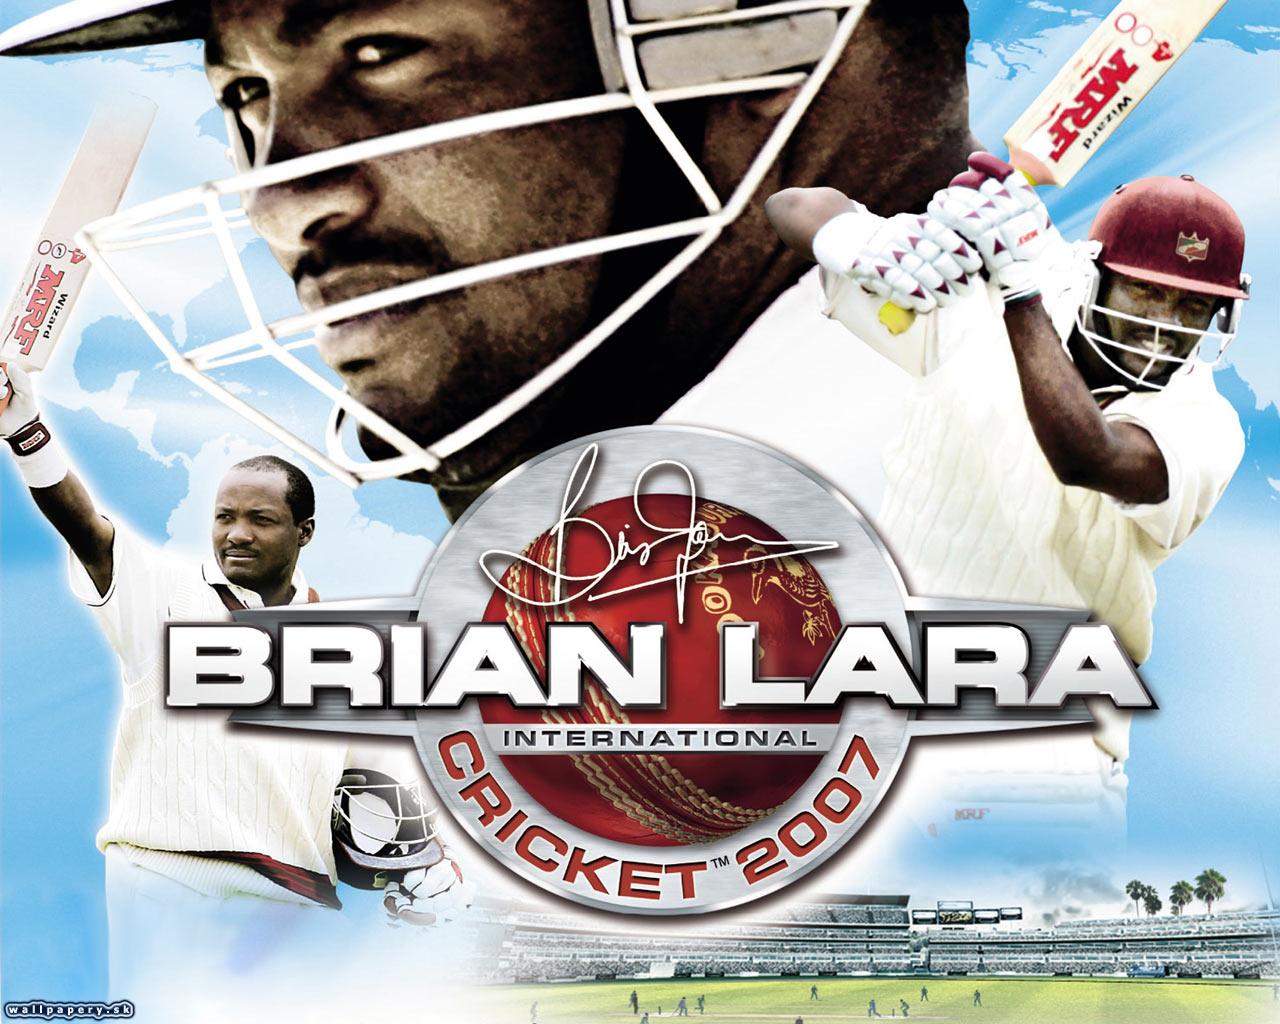 Brian Lara International Cricket 2007 - wallpaper 8